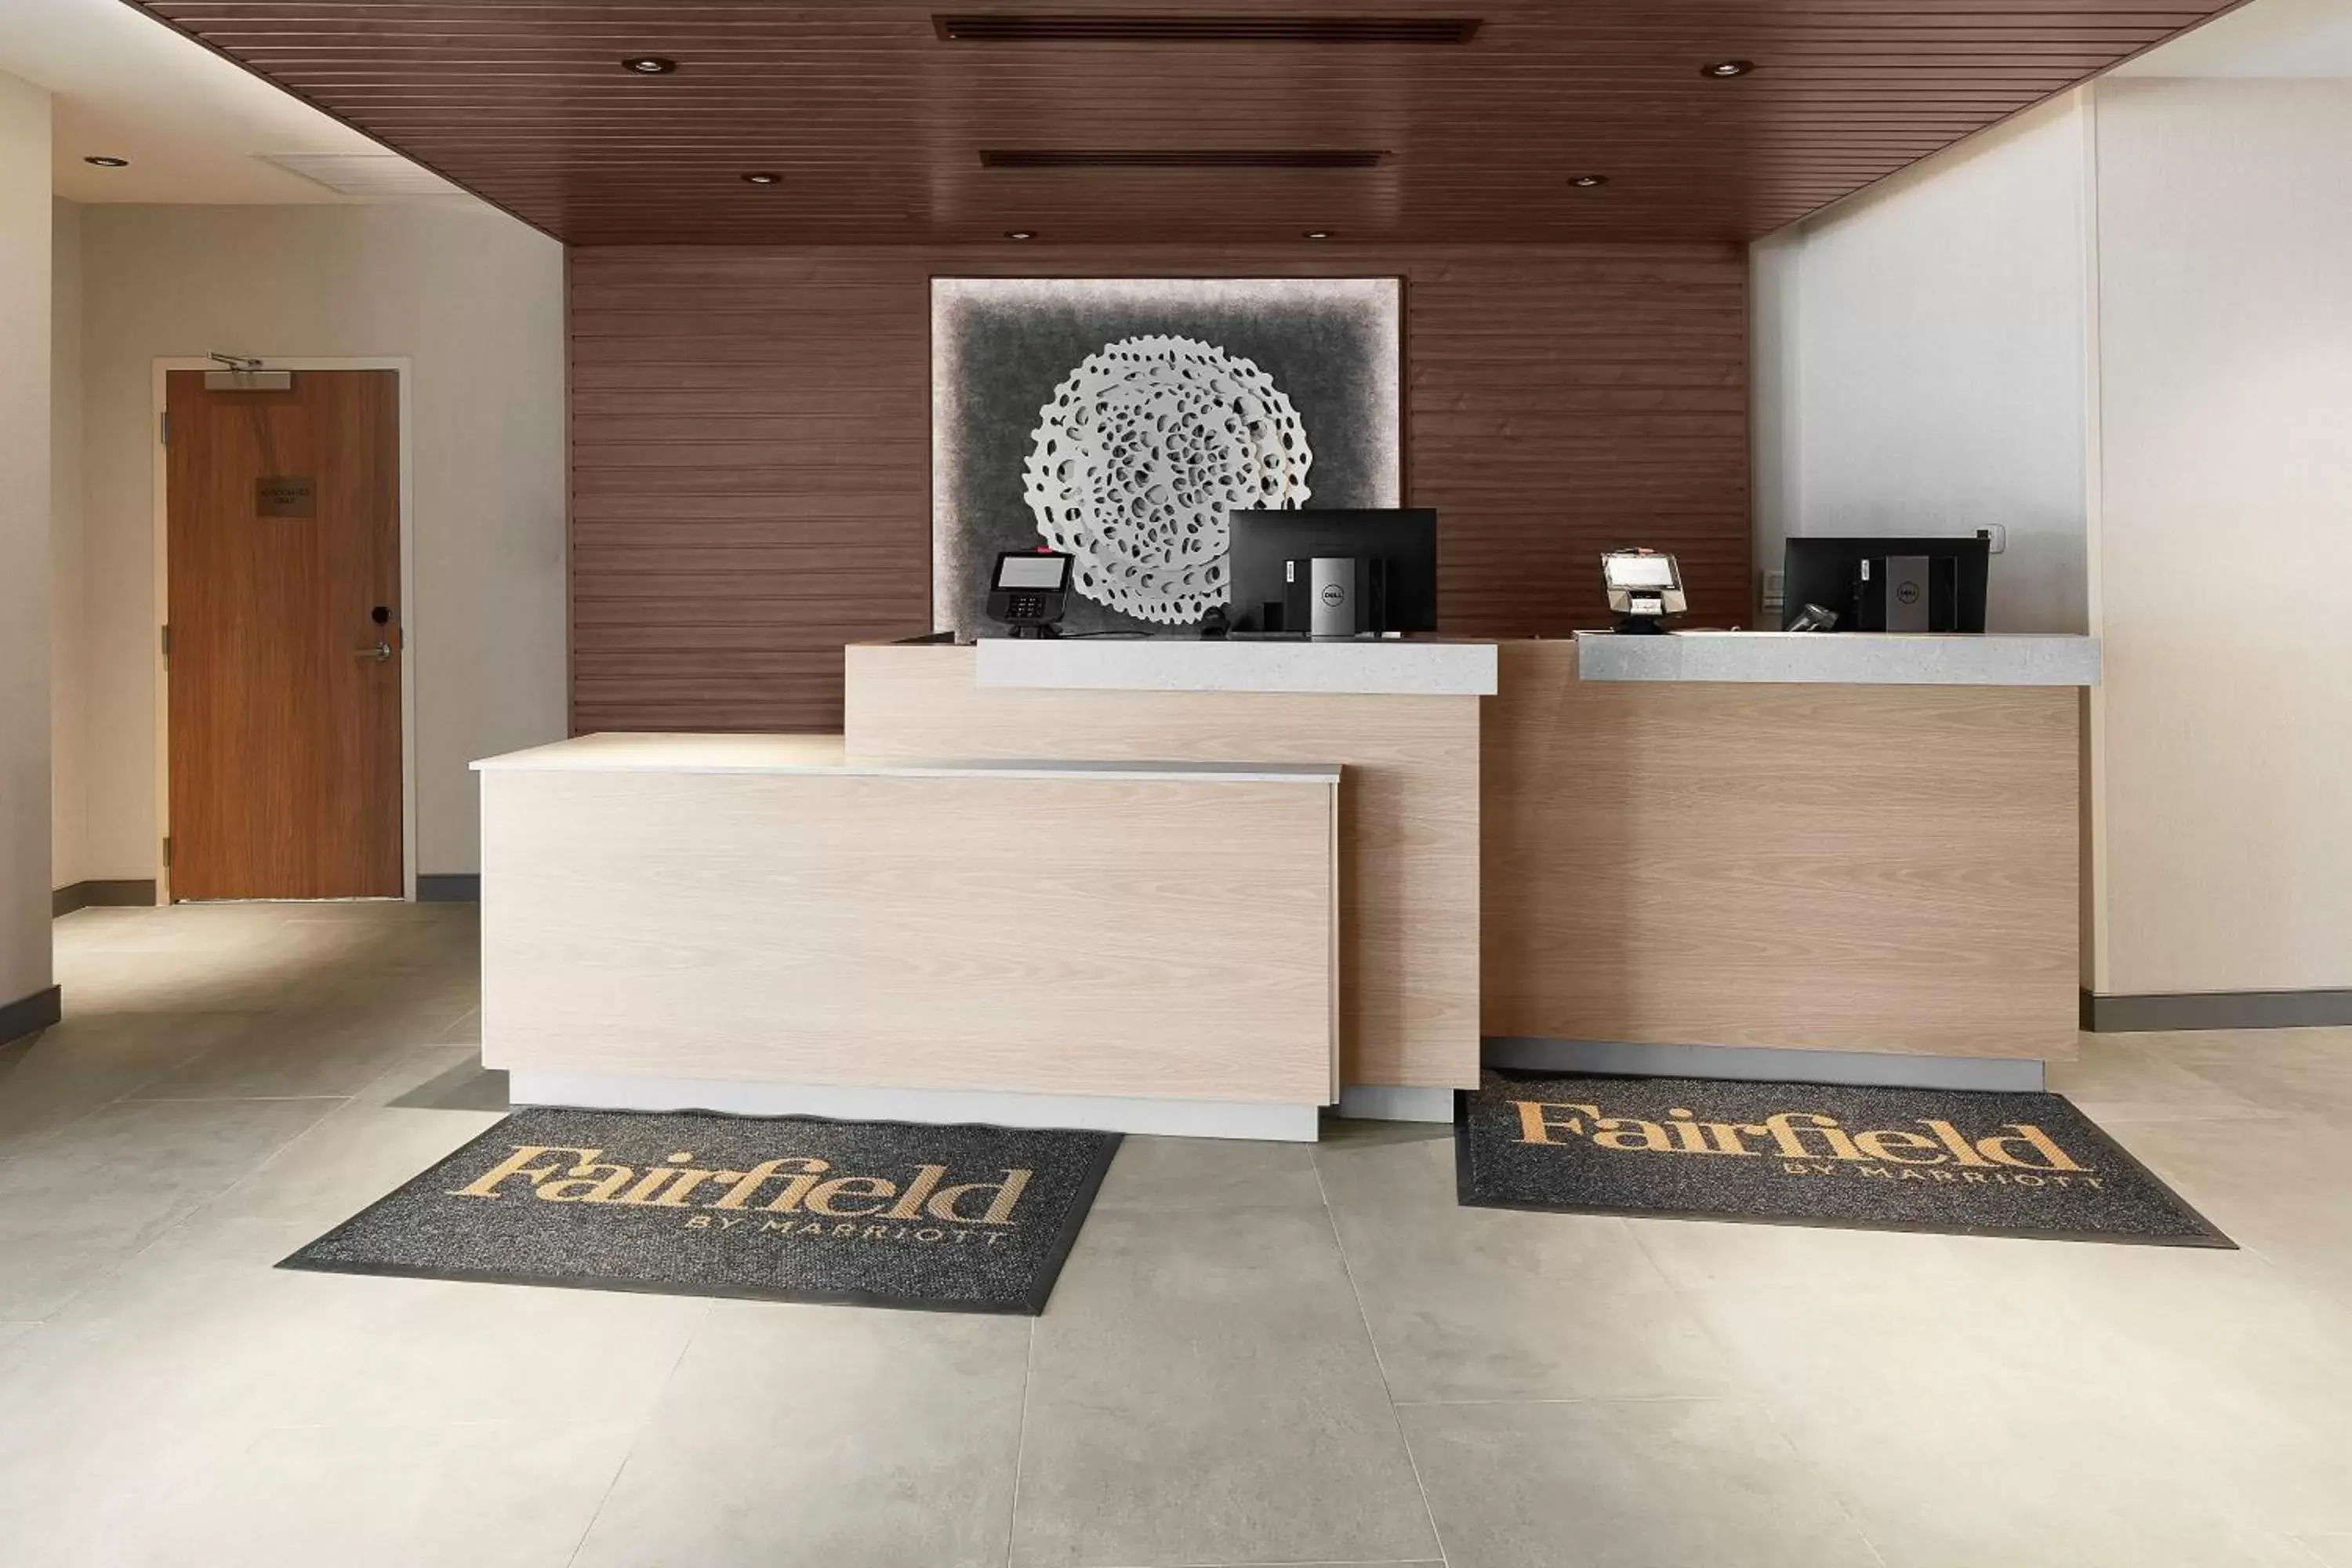 Lobby or reception, Lobby/Reception in Fairfield Inn & Suites by Marriott Stony Creek